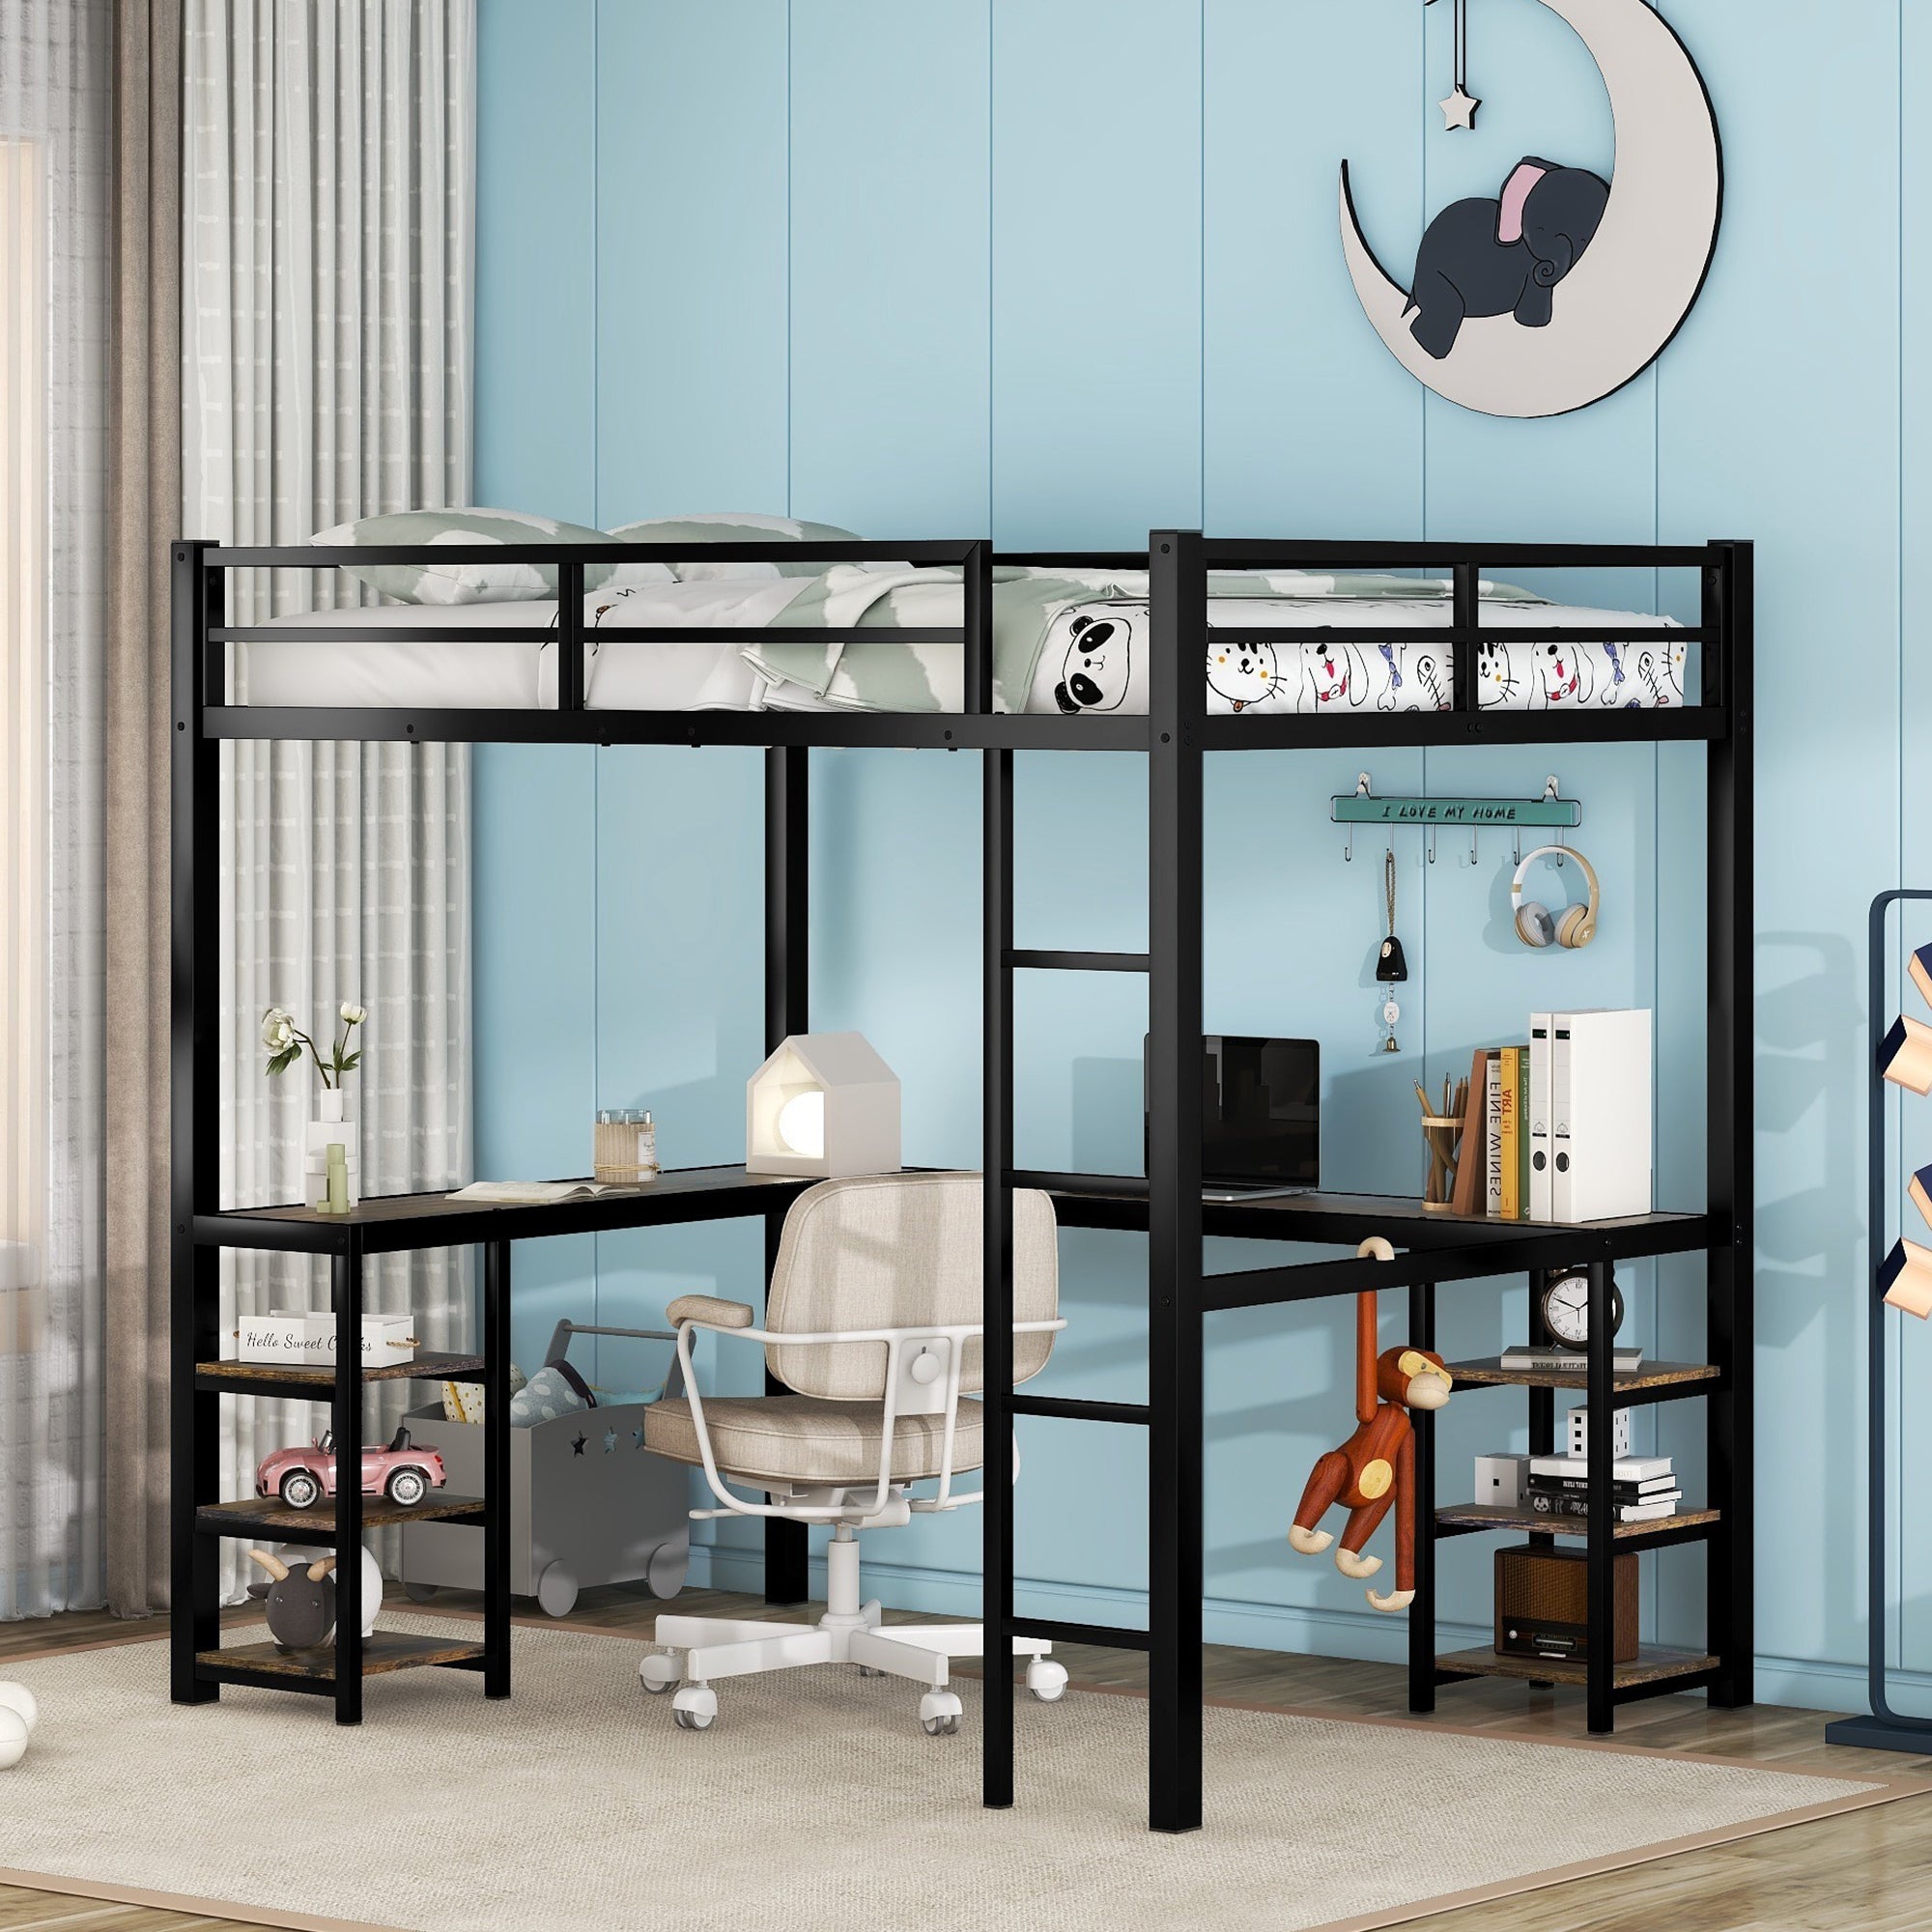 Full Metal Loft Bed with Desk and Shelves, Loft Bed with Ladder and Guardrails, Loft Bed Frame for Bedroom (Black) (Old SKU: W1307S00009)